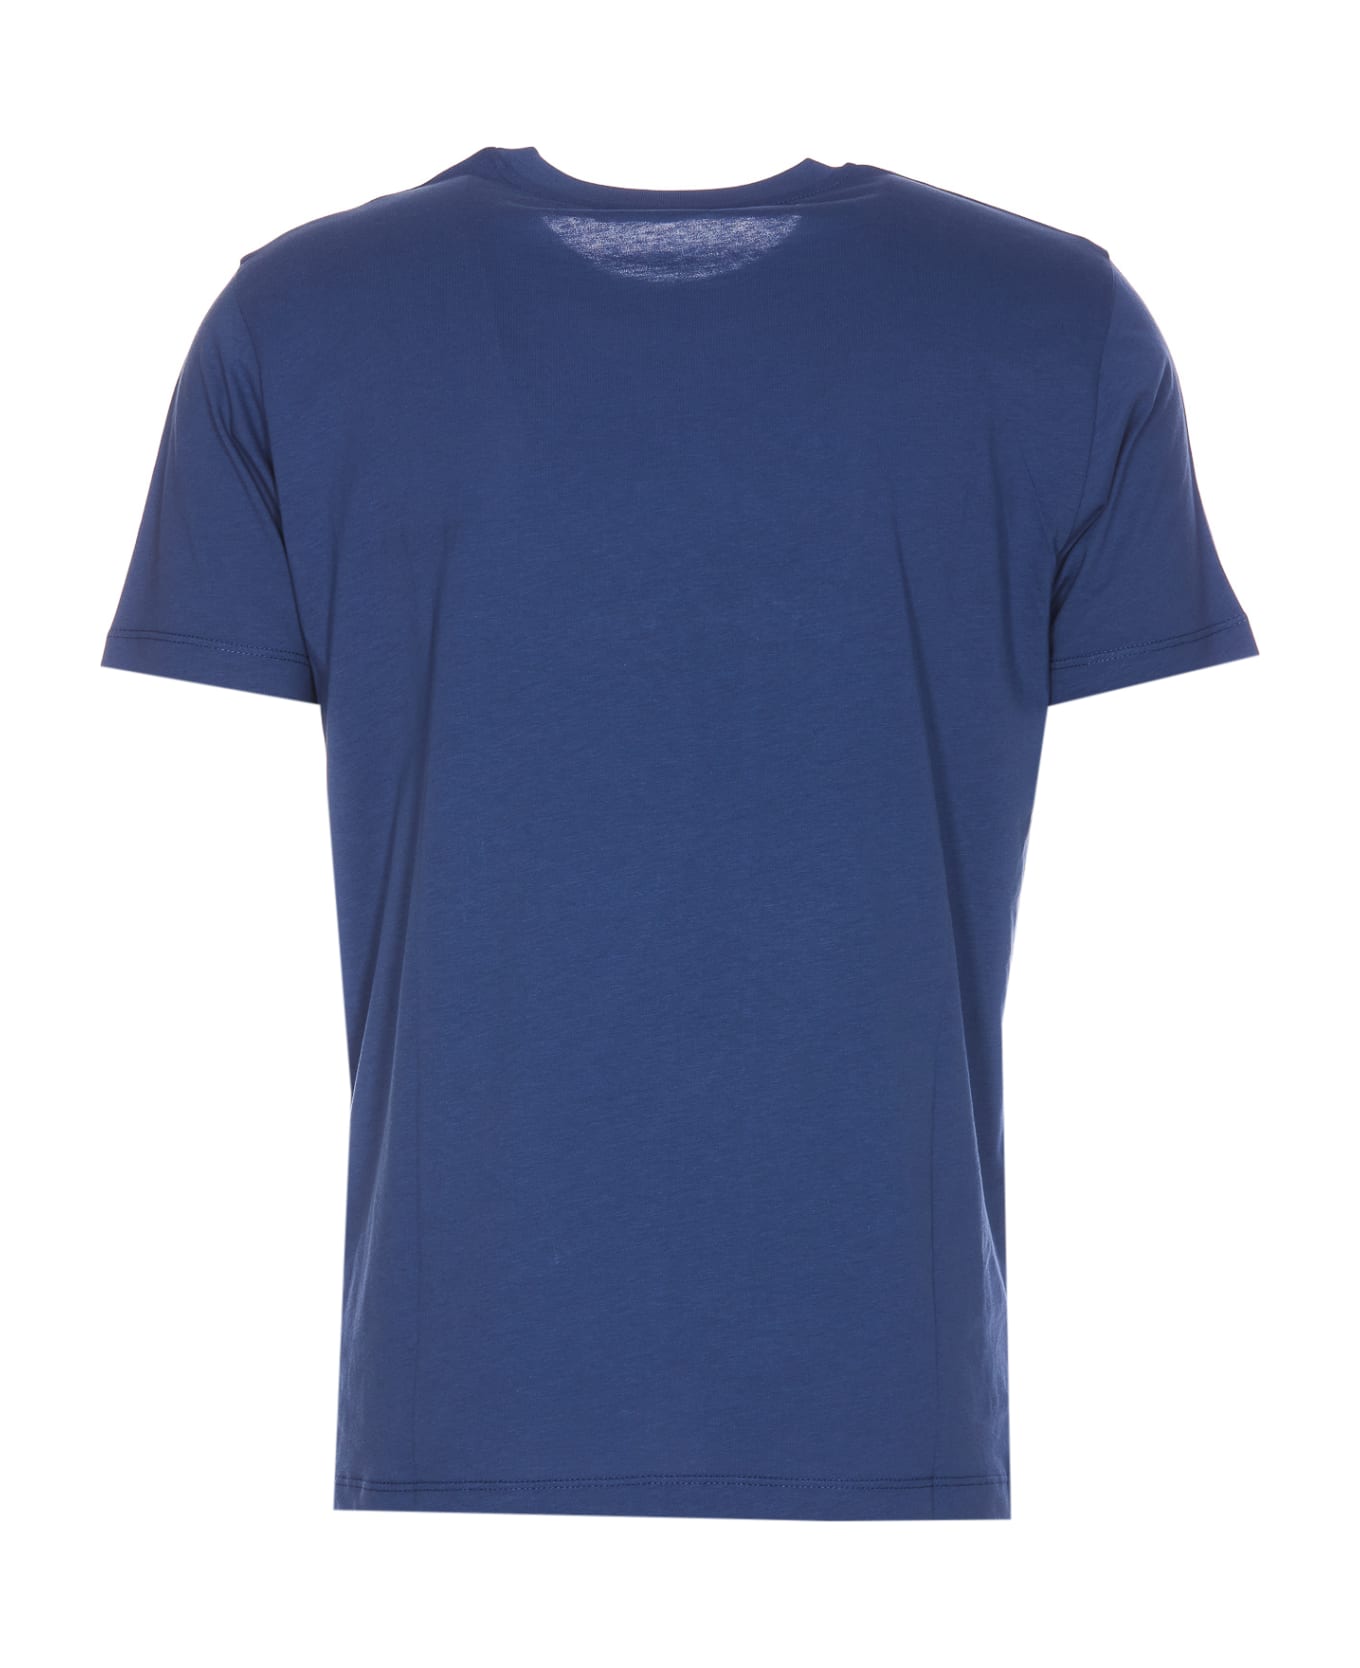 Vilebrequin T-shirt Tortue Flockee - Blue